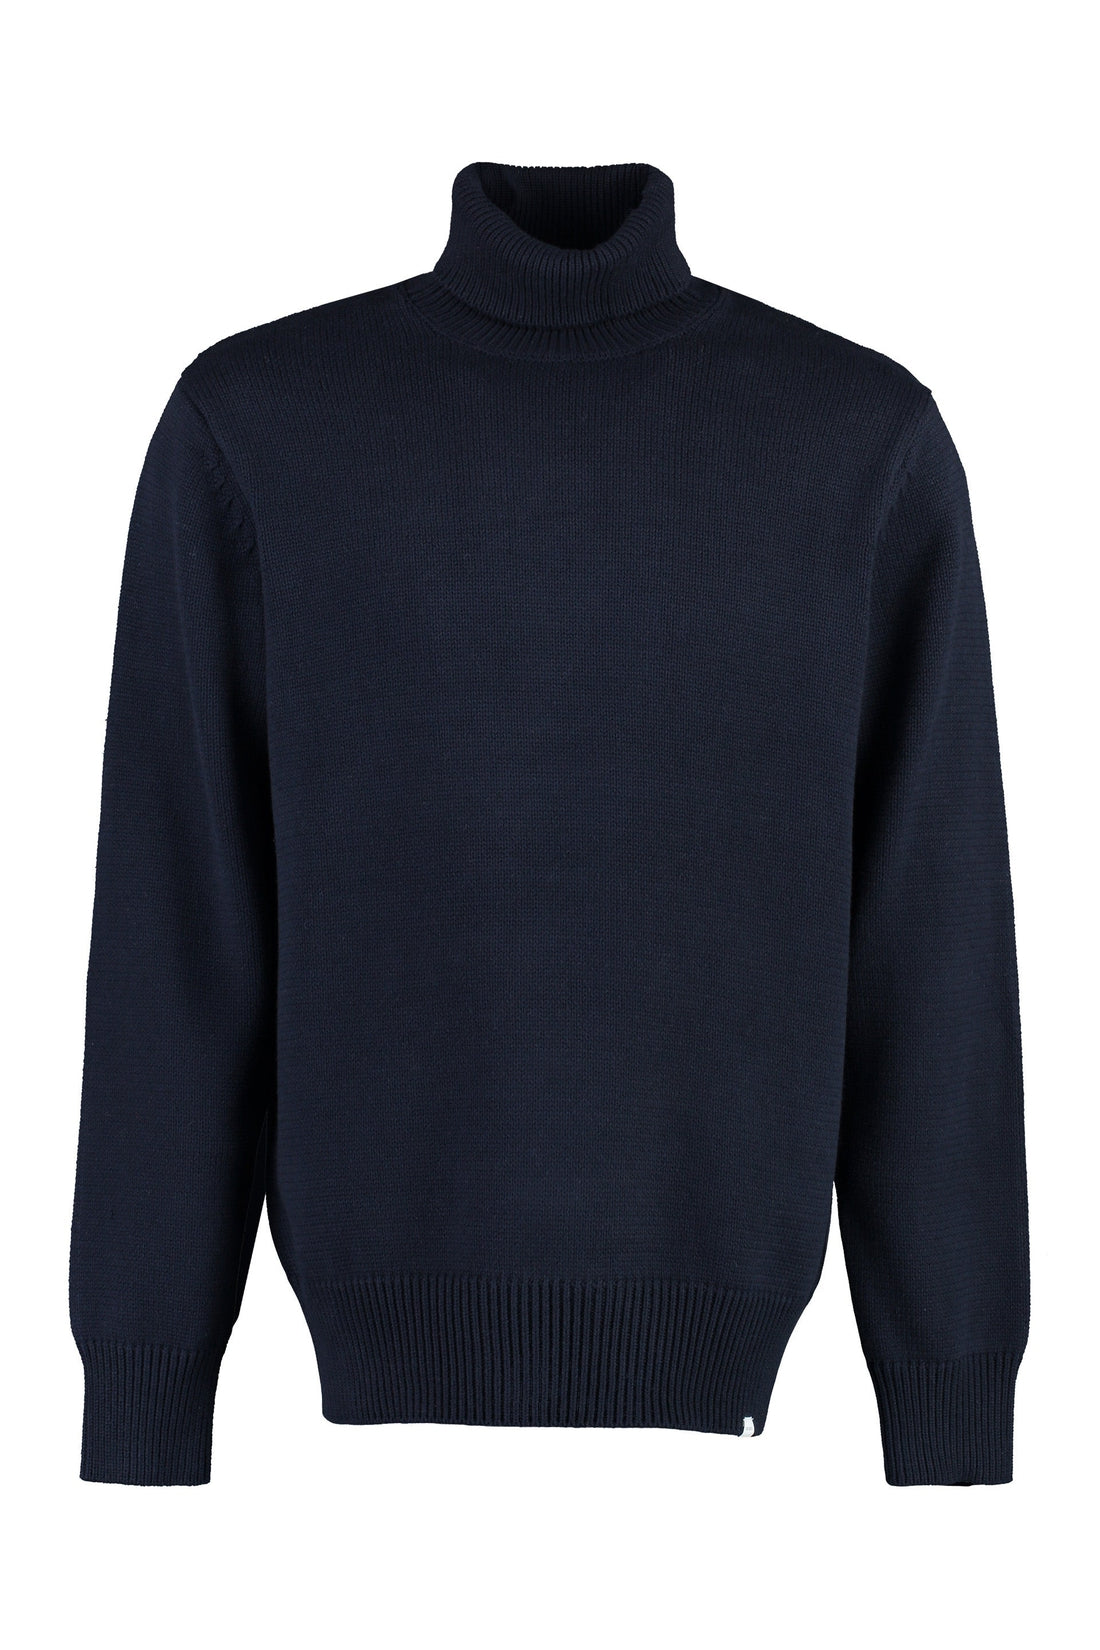 Les Deux-OUTLET-SALE-Grant cotton turtleneck sweater-ARCHIVIST